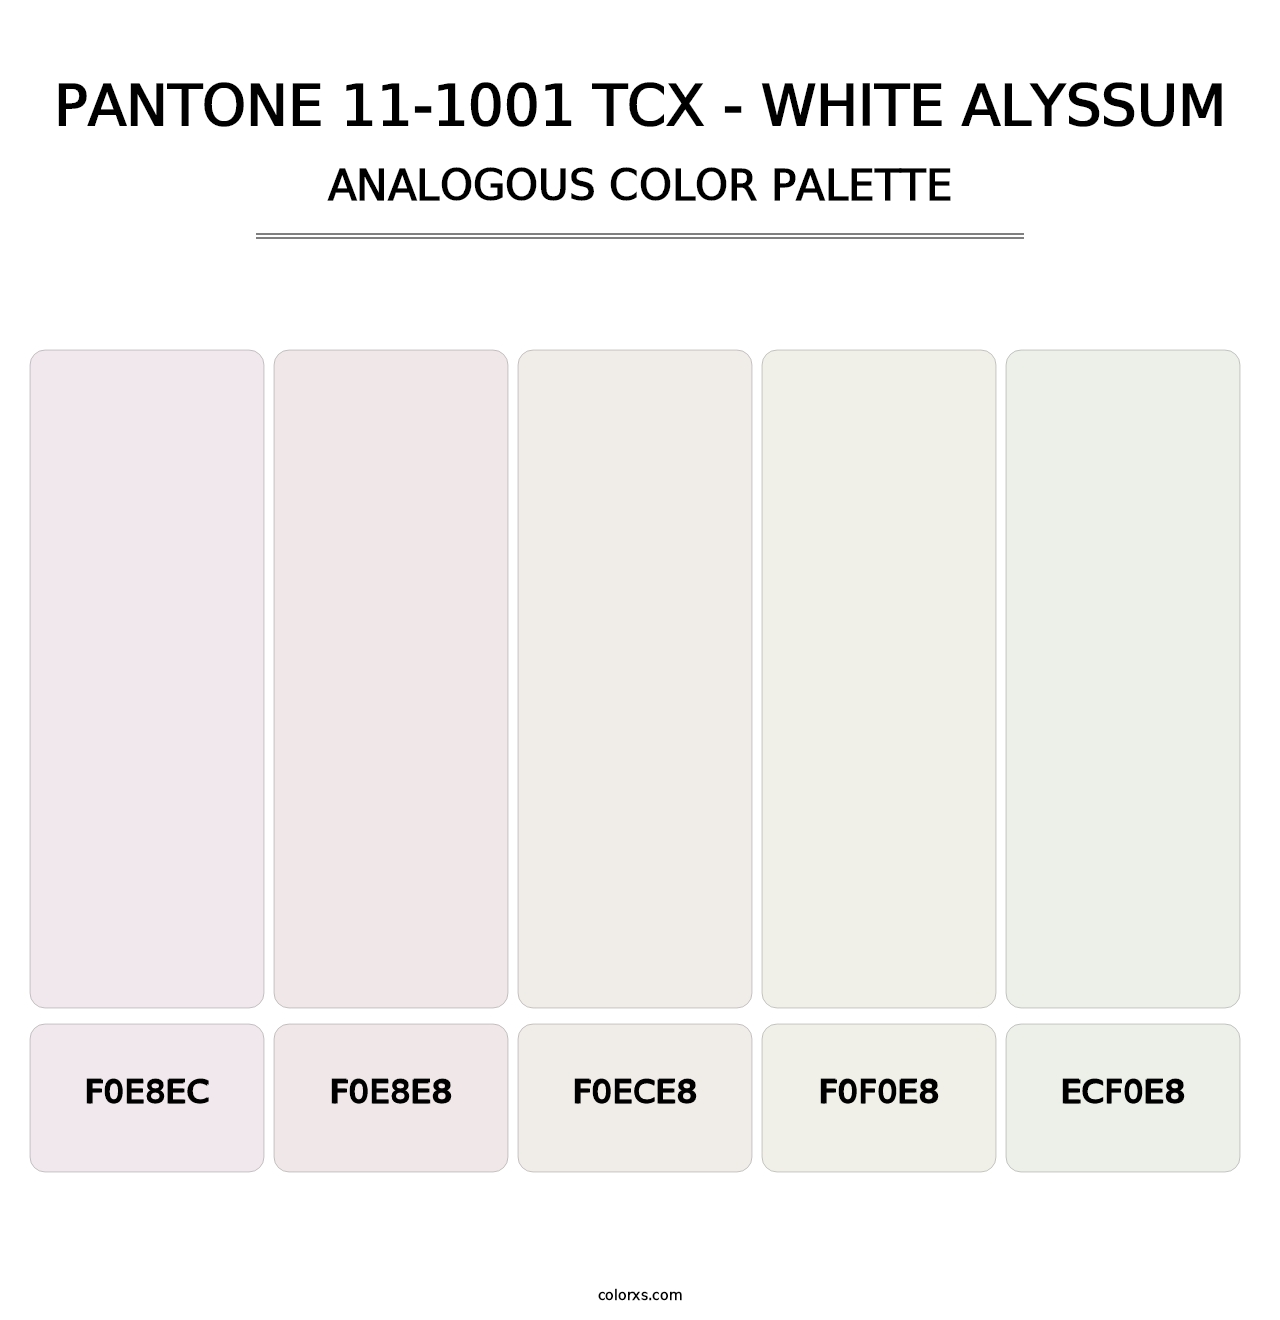 PANTONE 11-1001 TCX - White Alyssum - Analogous Color Palette